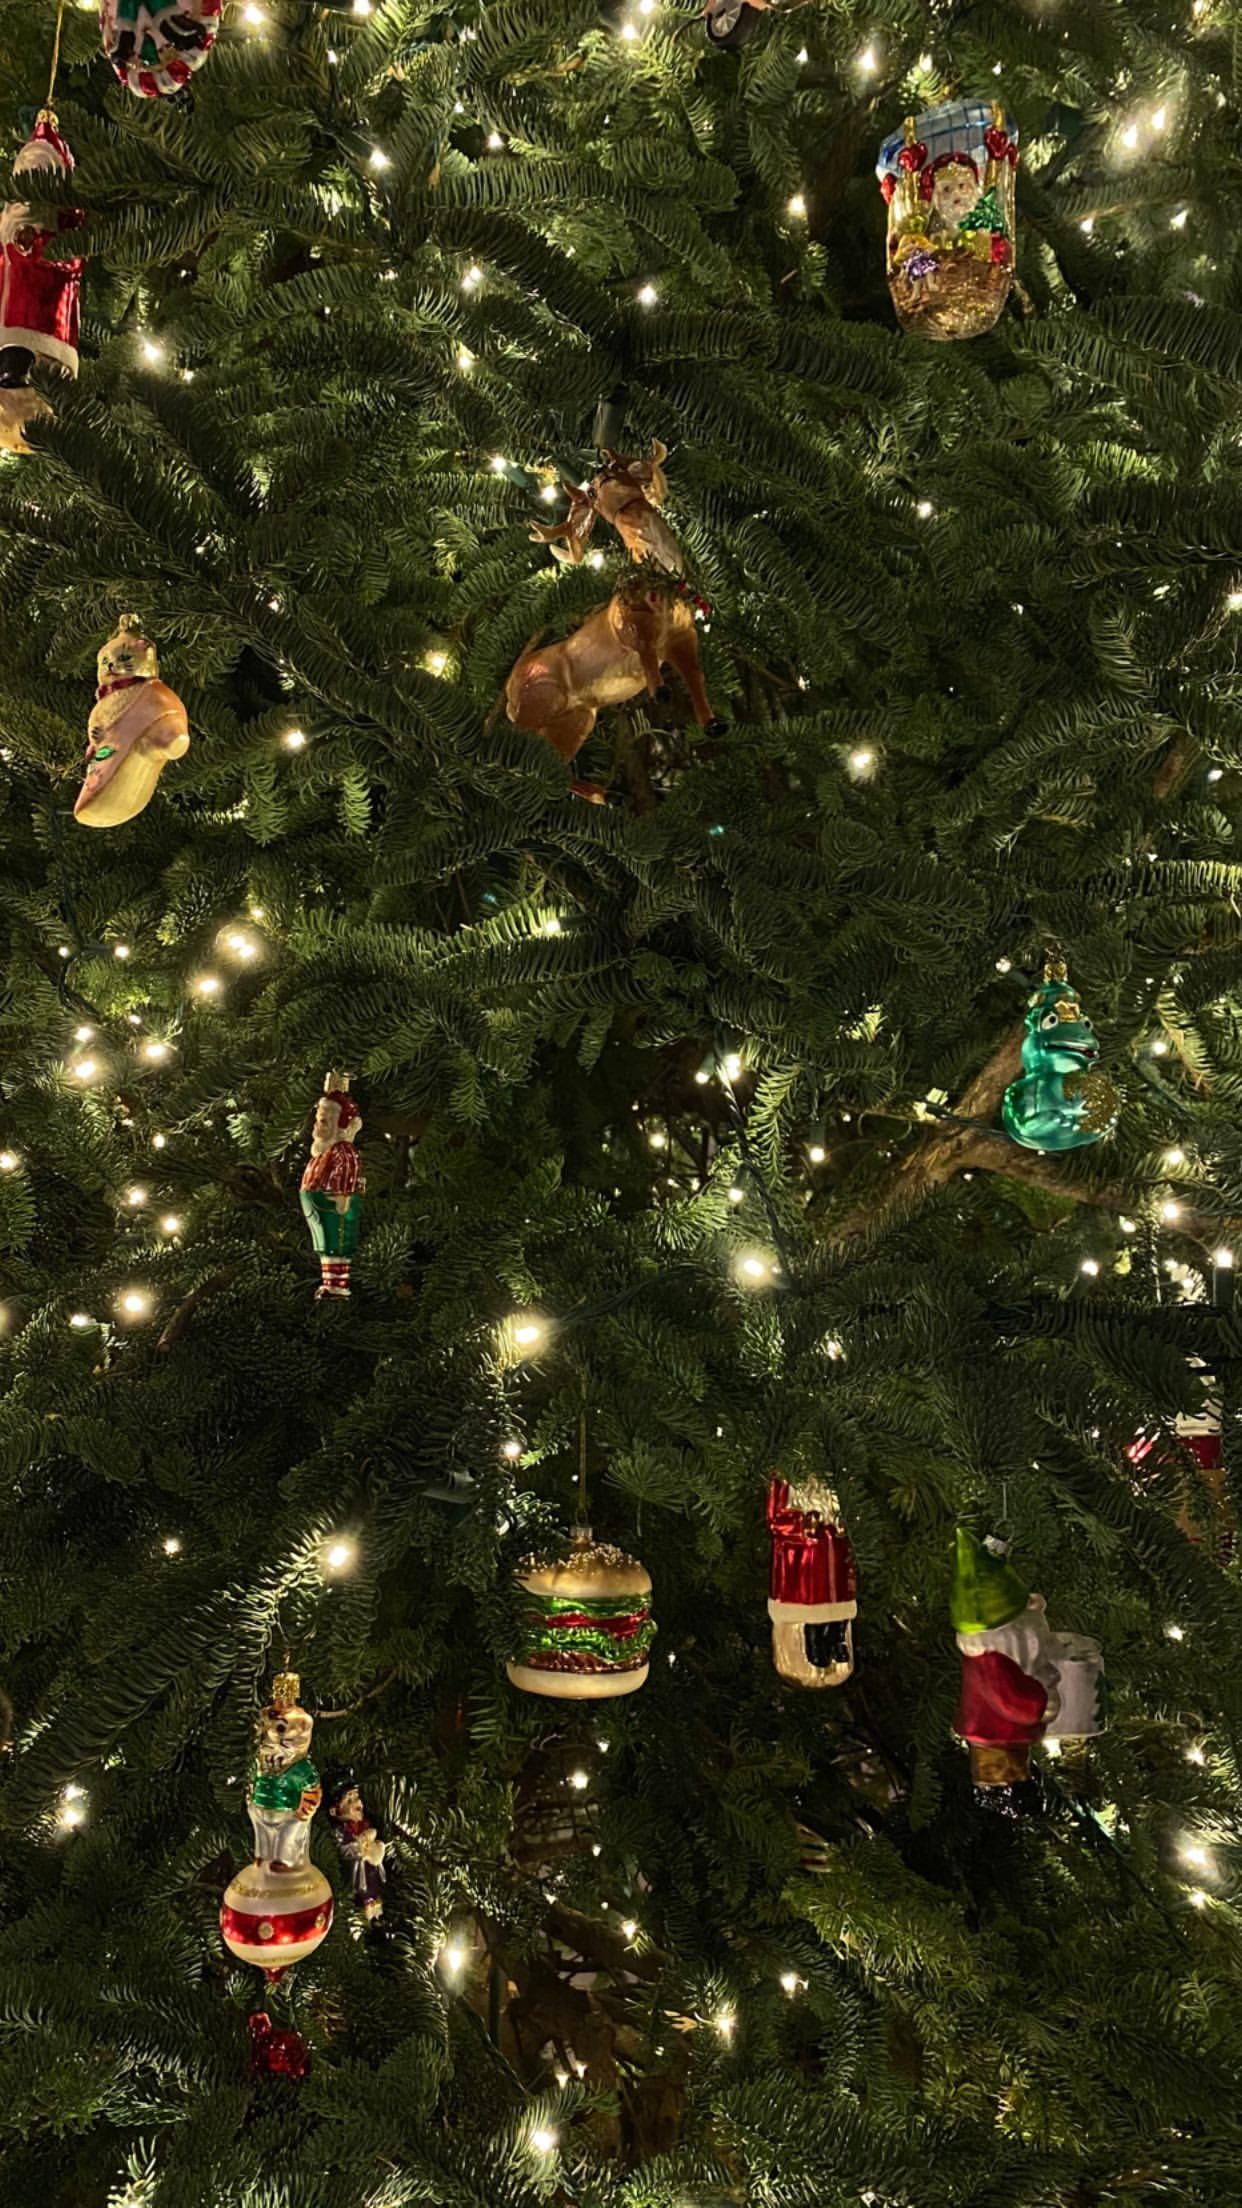 Kylie Jenner mostra decoração de Natal de sua mansão (Foto: Reprodução/Instagram)